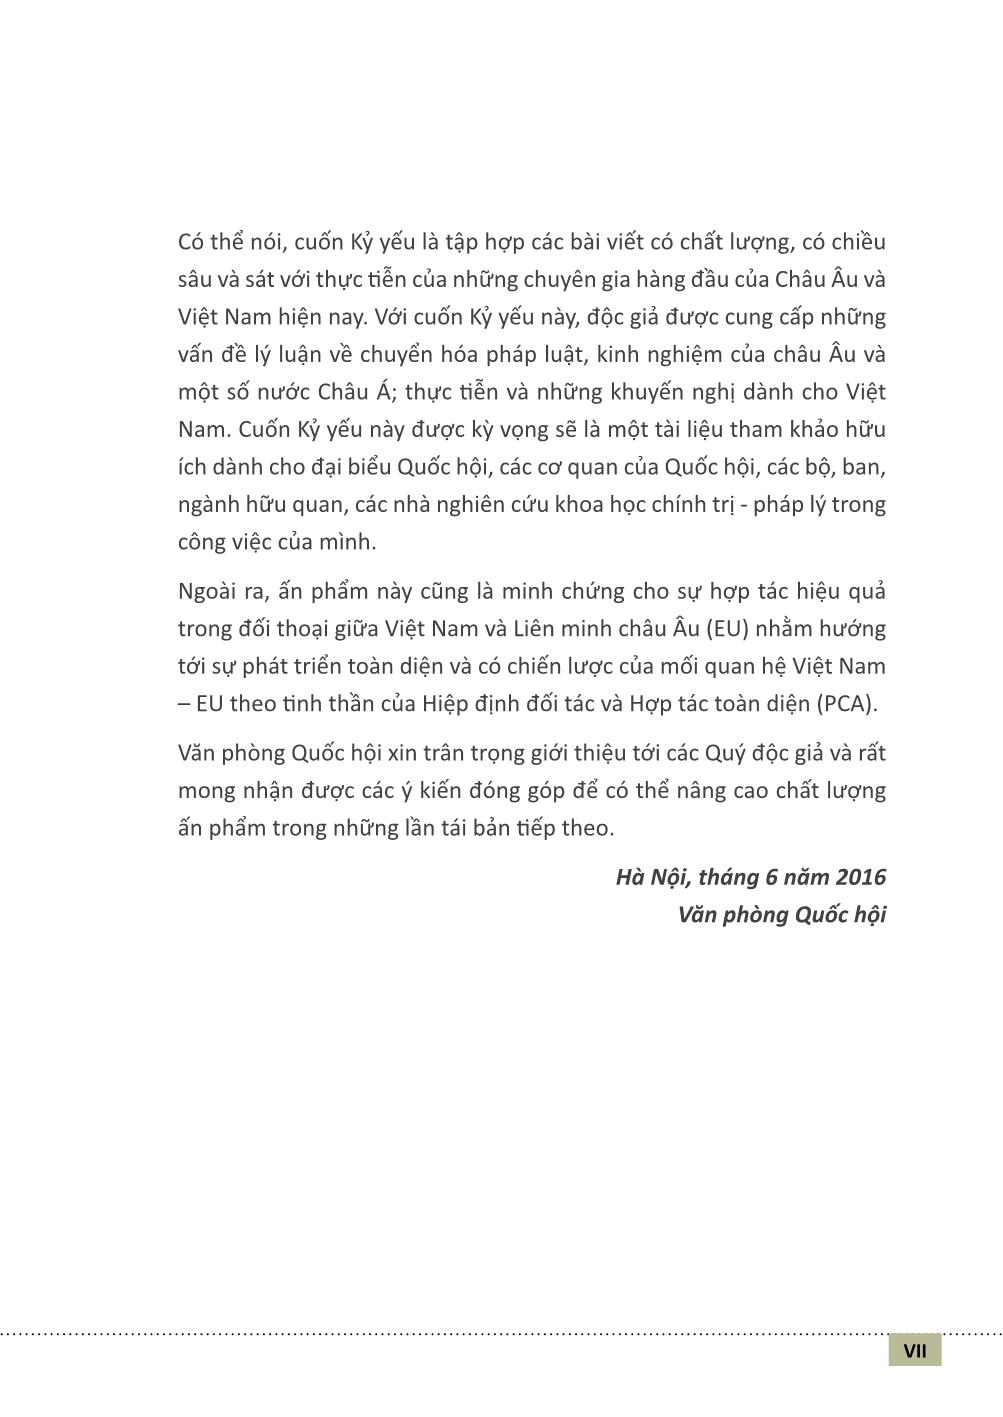 Chuyển hóa pháp luật và các vấn đề ở Việt Nam (Phần 1) trang 6